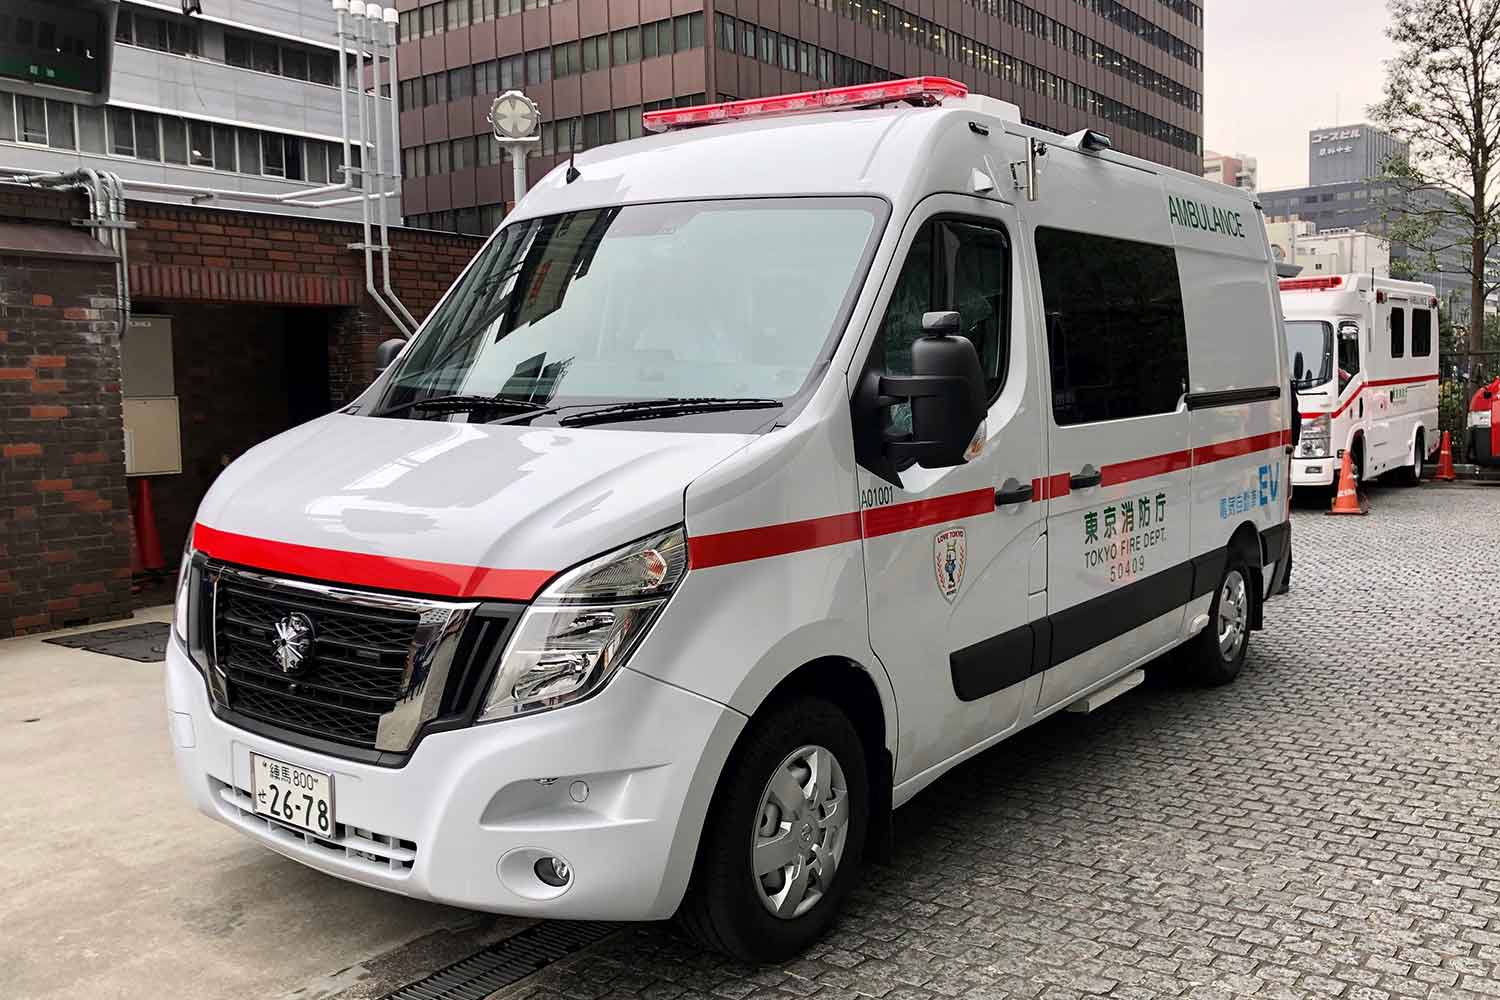 デイタイム救急隊のEV救急車